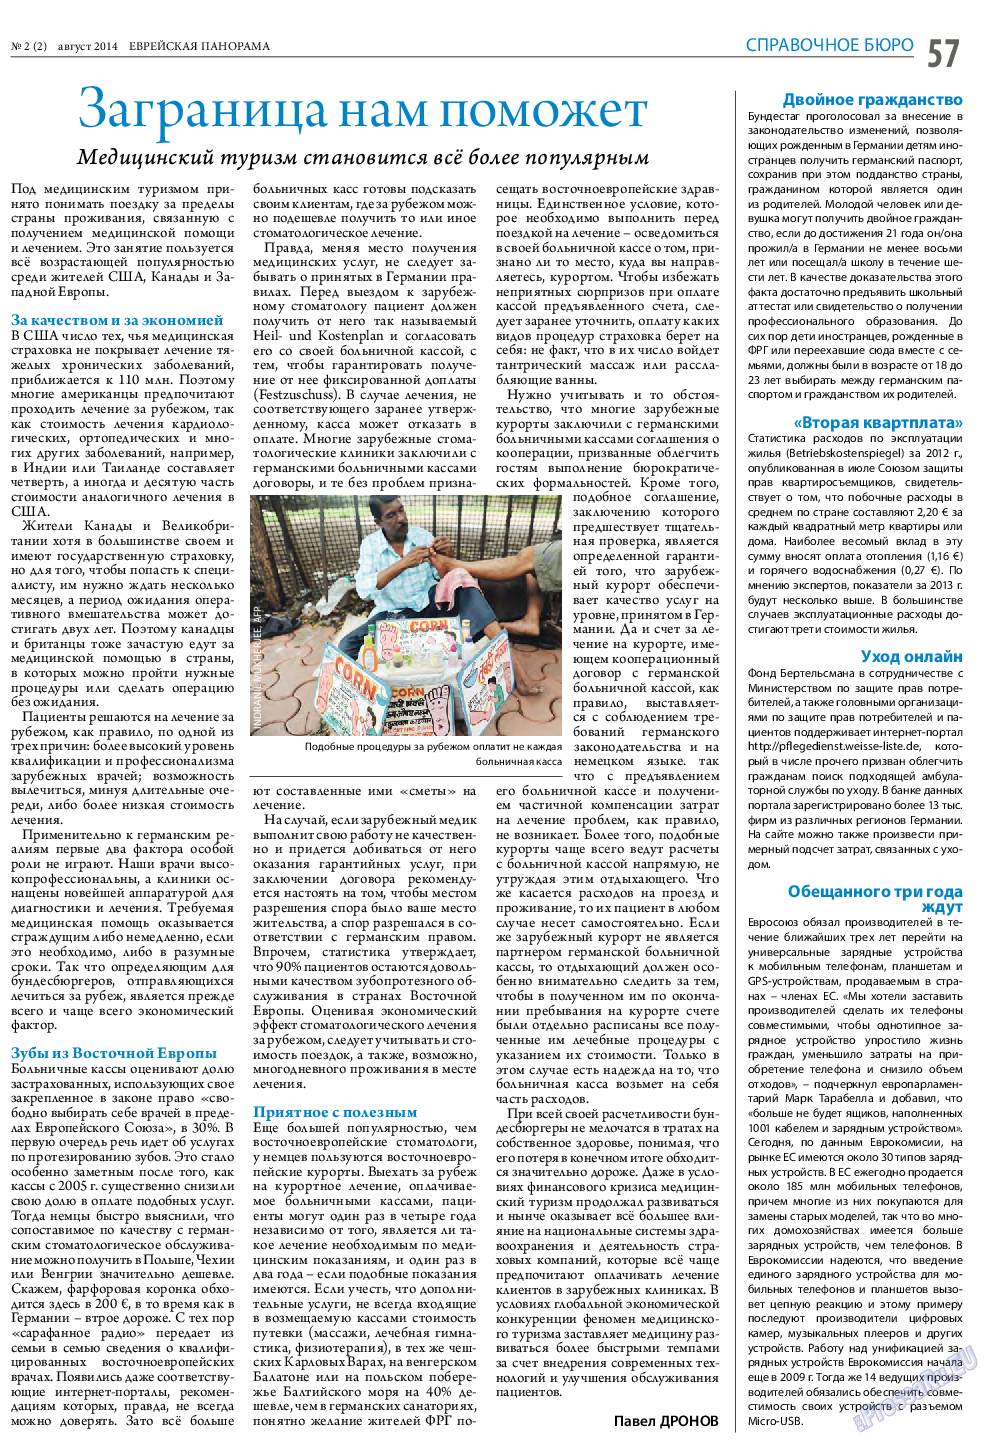 Еврейская панорама (газета). 2014 год, номер 2, стр. 57